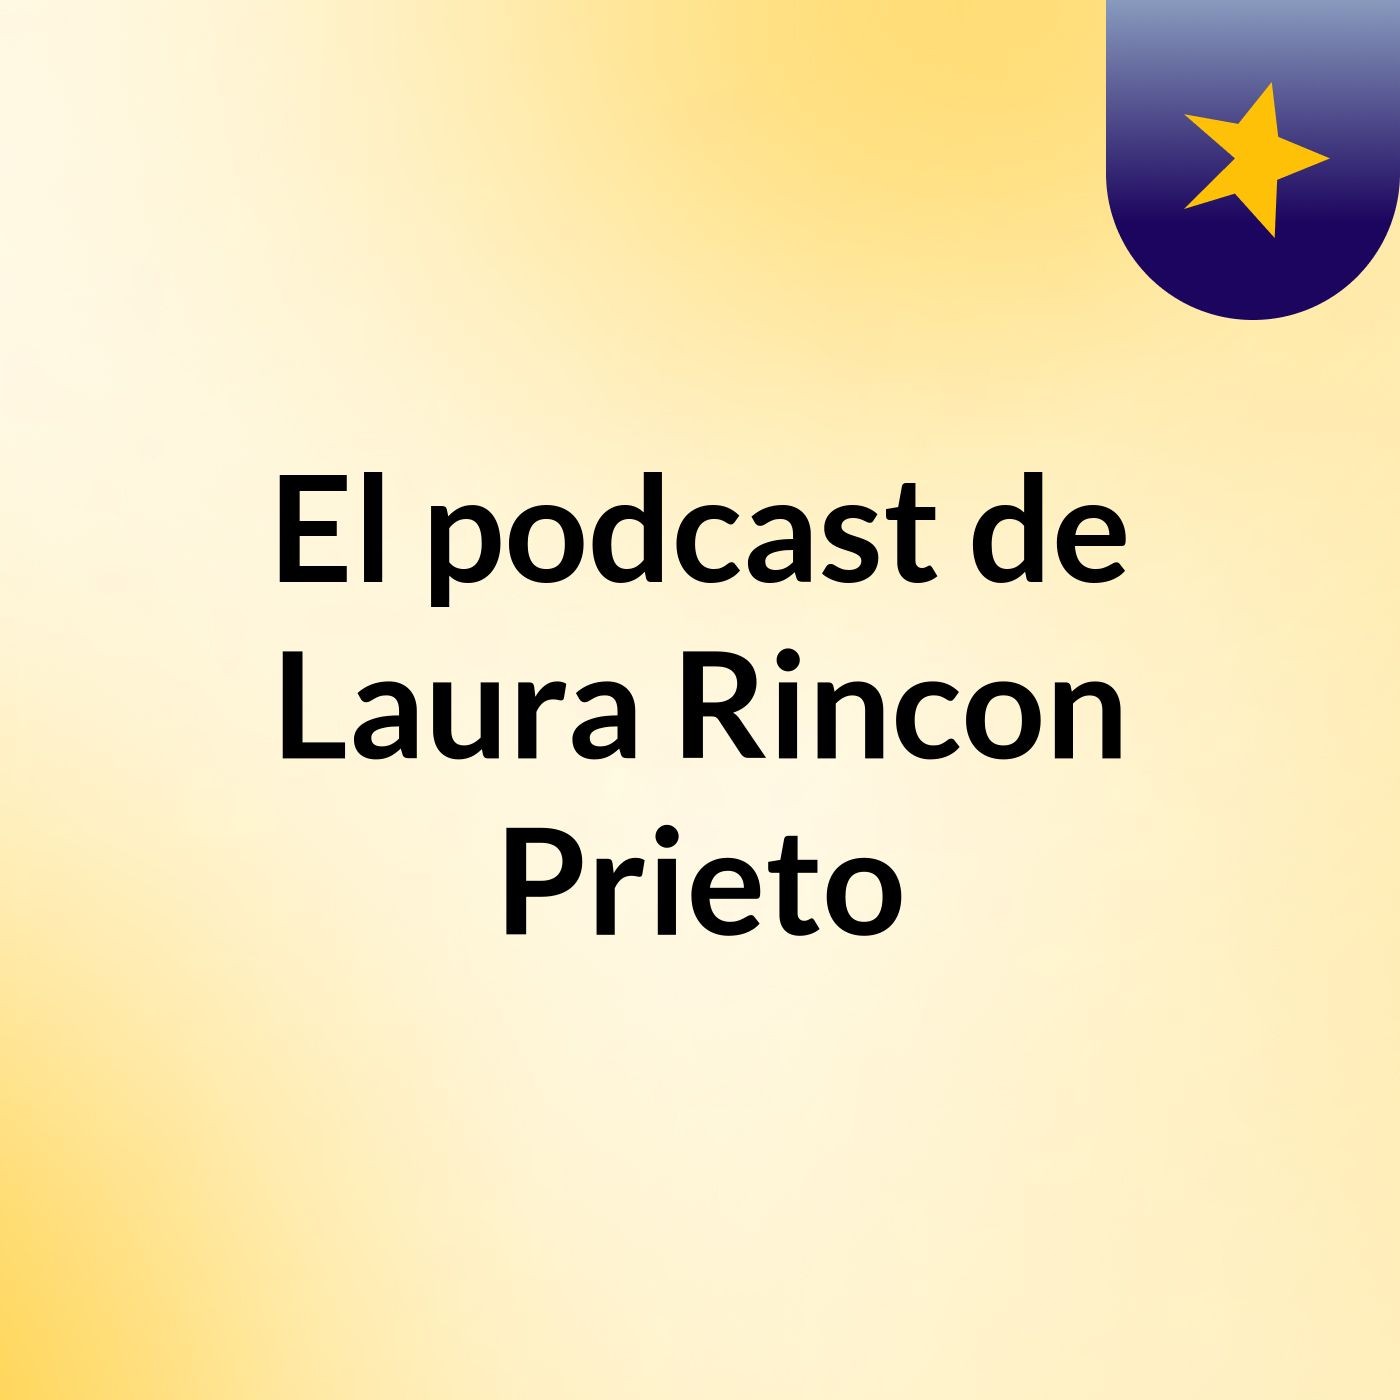 El podcast de Laura Rincon Prieto